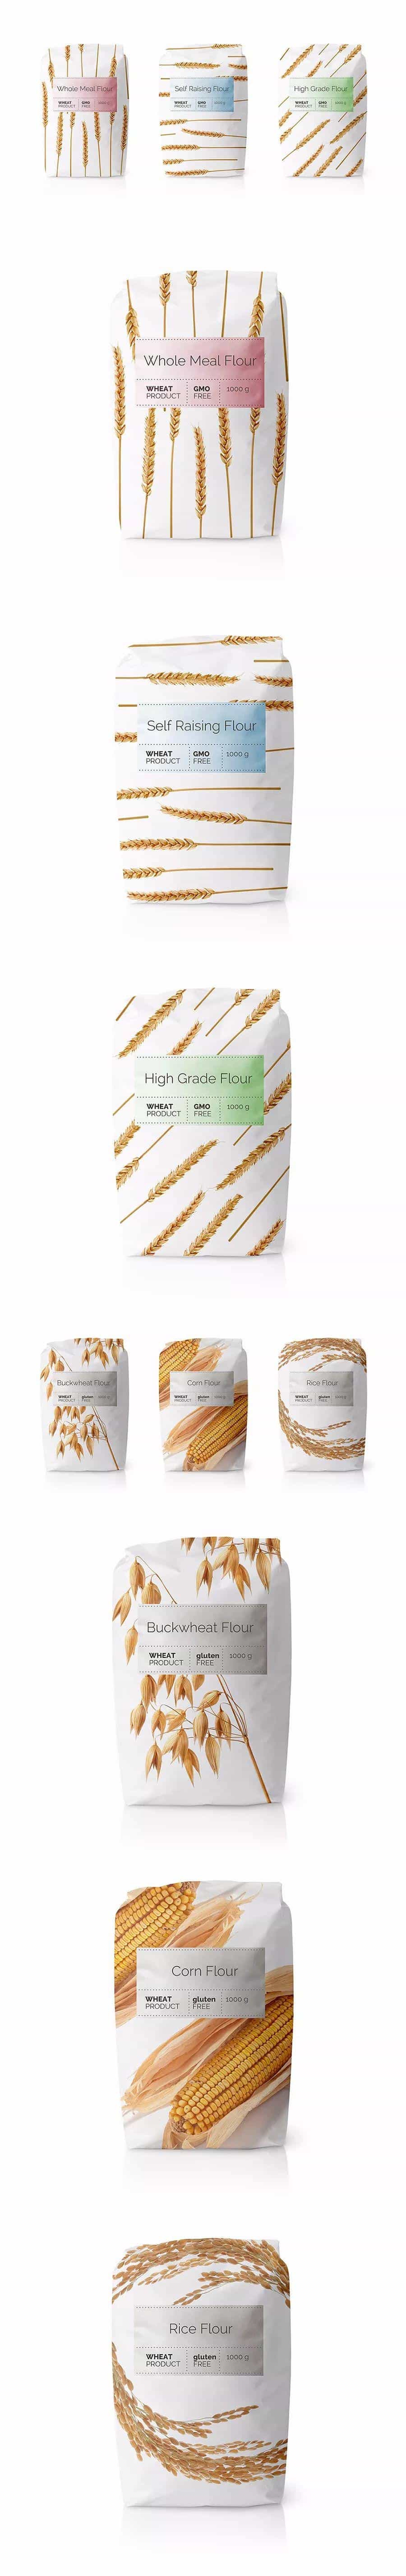 包装丨面粉包装设计分享  第35张